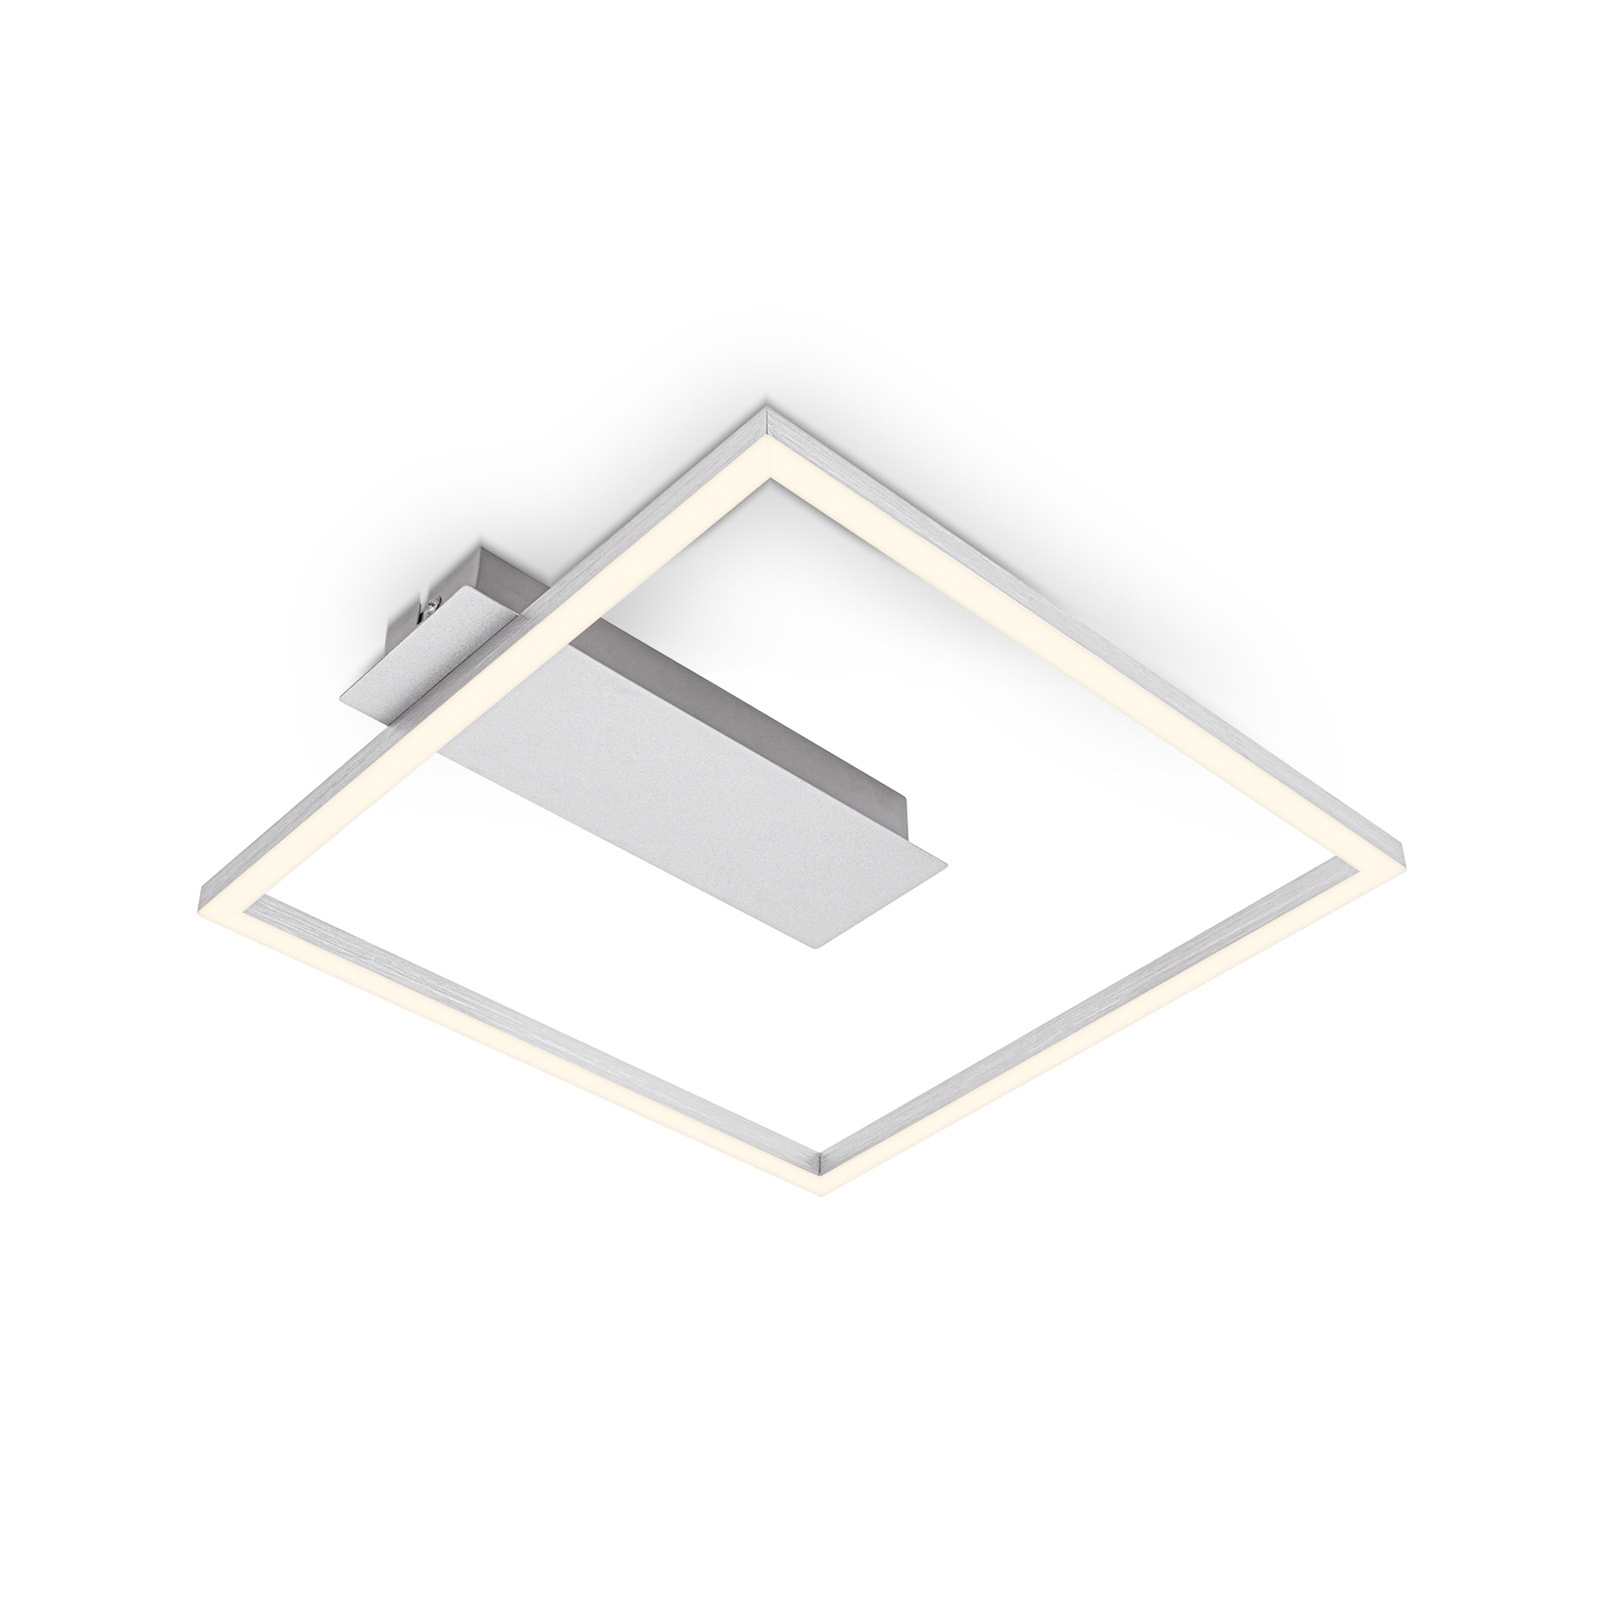 LED-Deckenleuchte 3771 in Rahmenform, alu